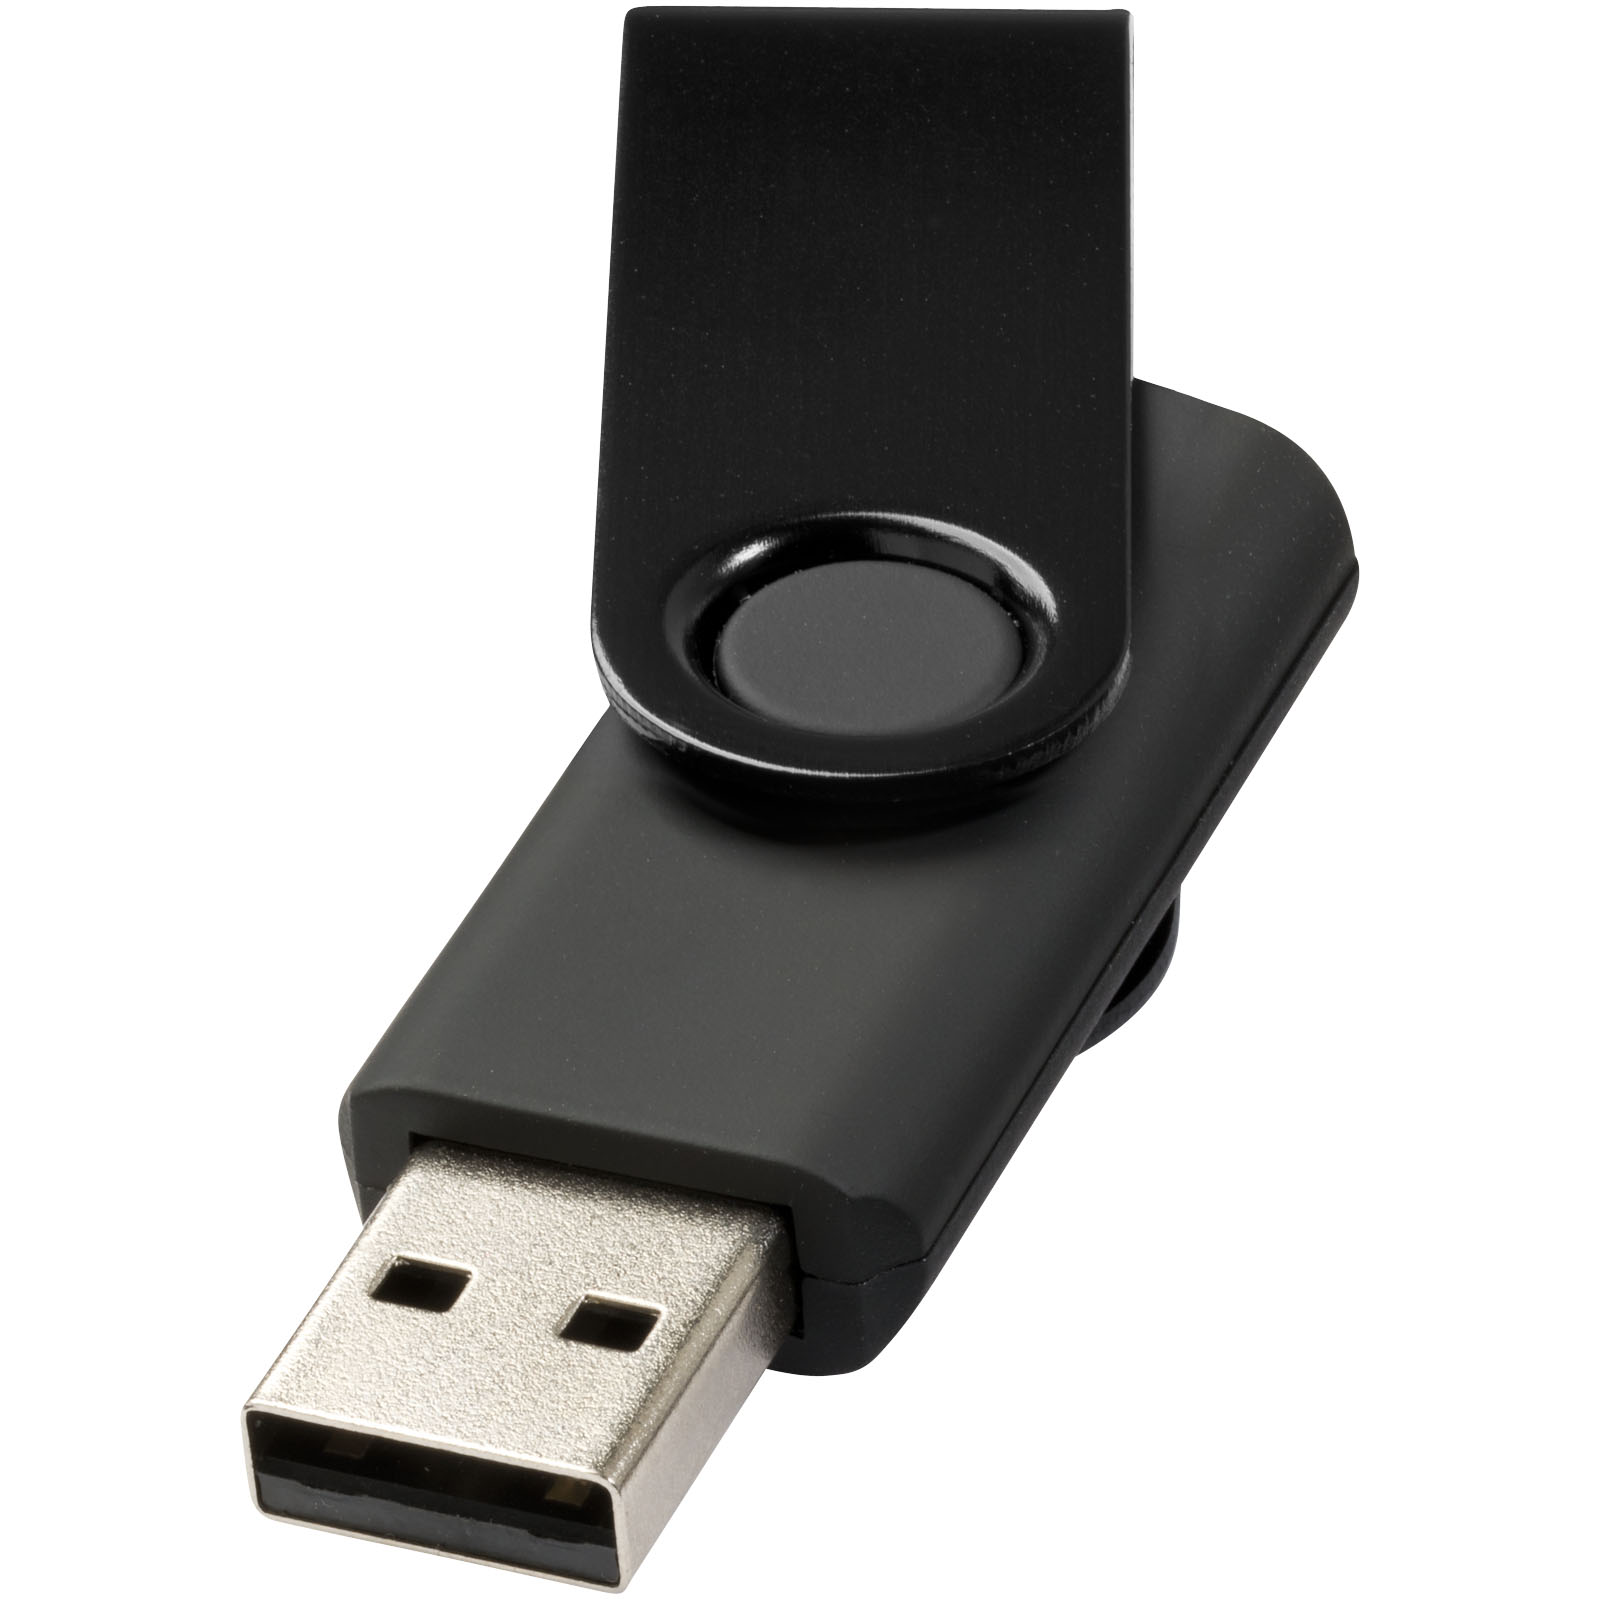 USB Flash Drives - Rotate-metallic 4GB USB flash drive